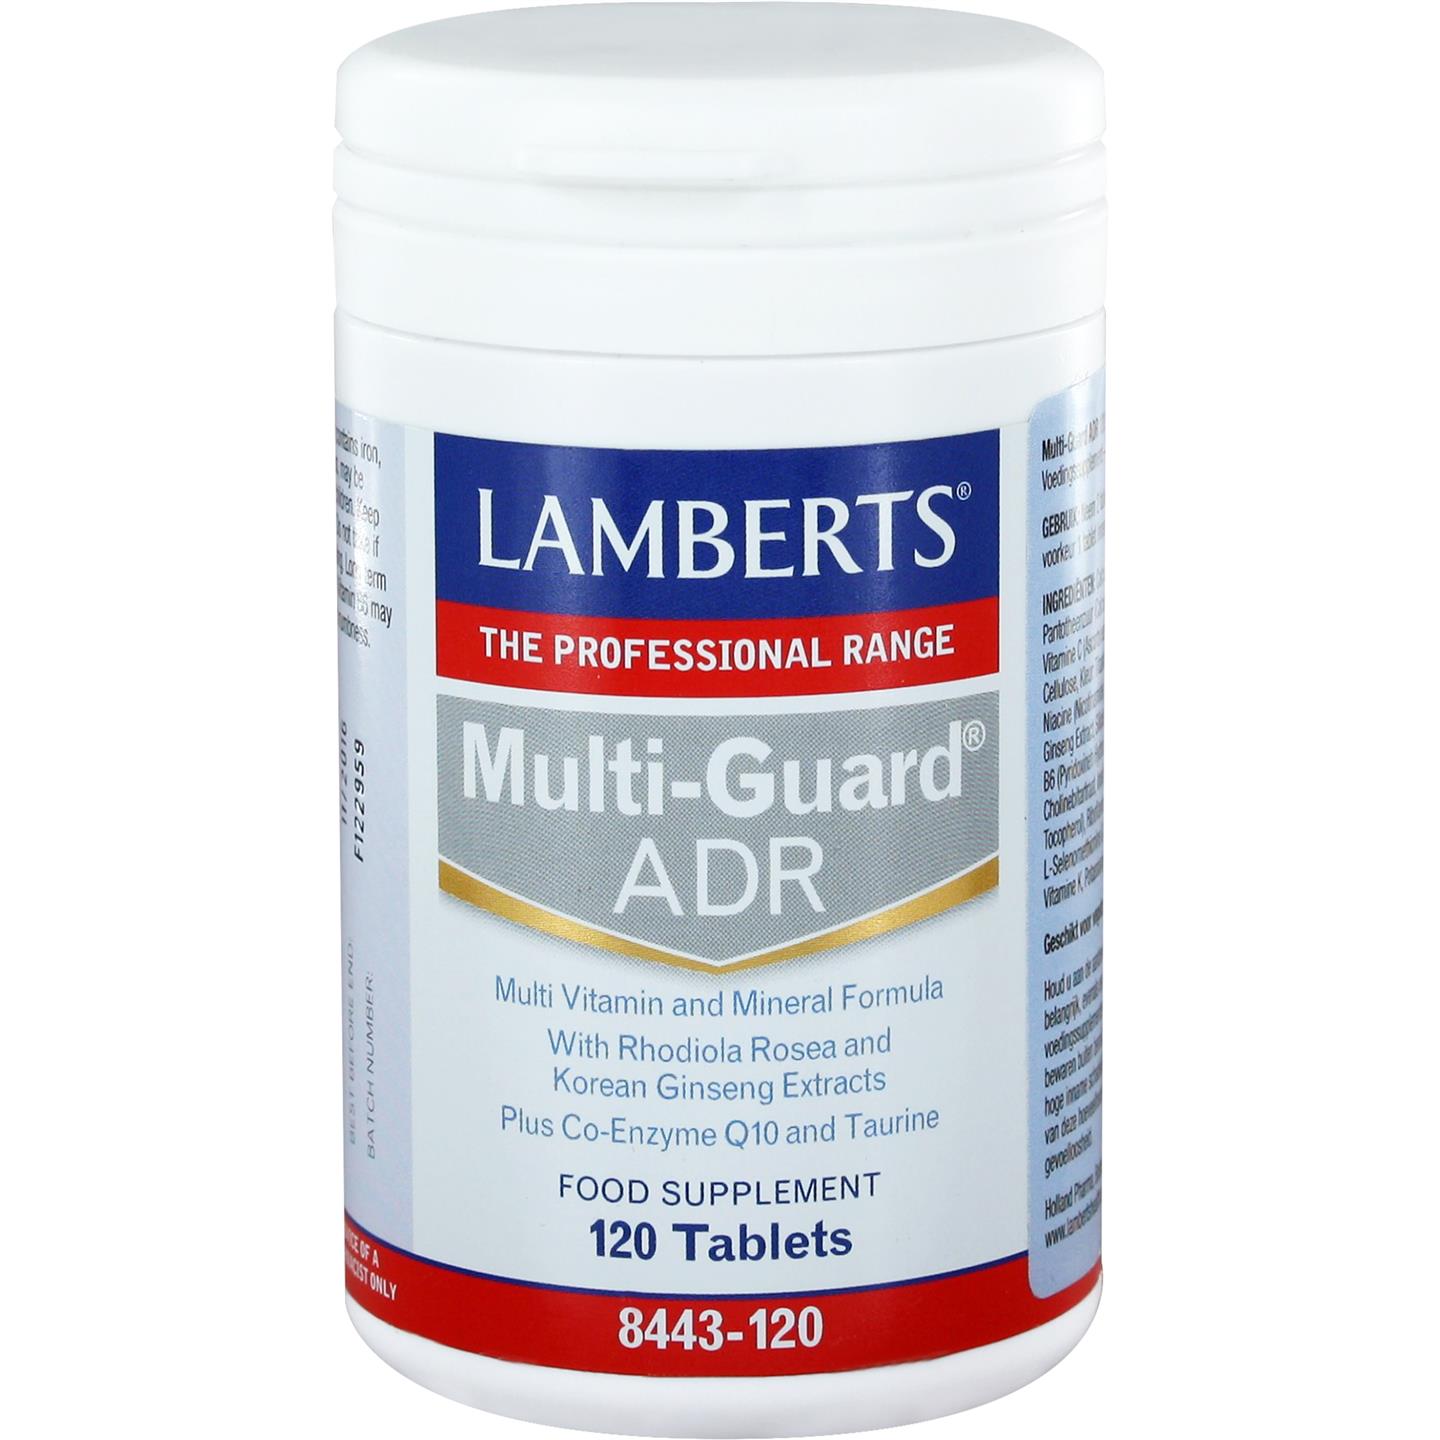 Multi-Guard ADR